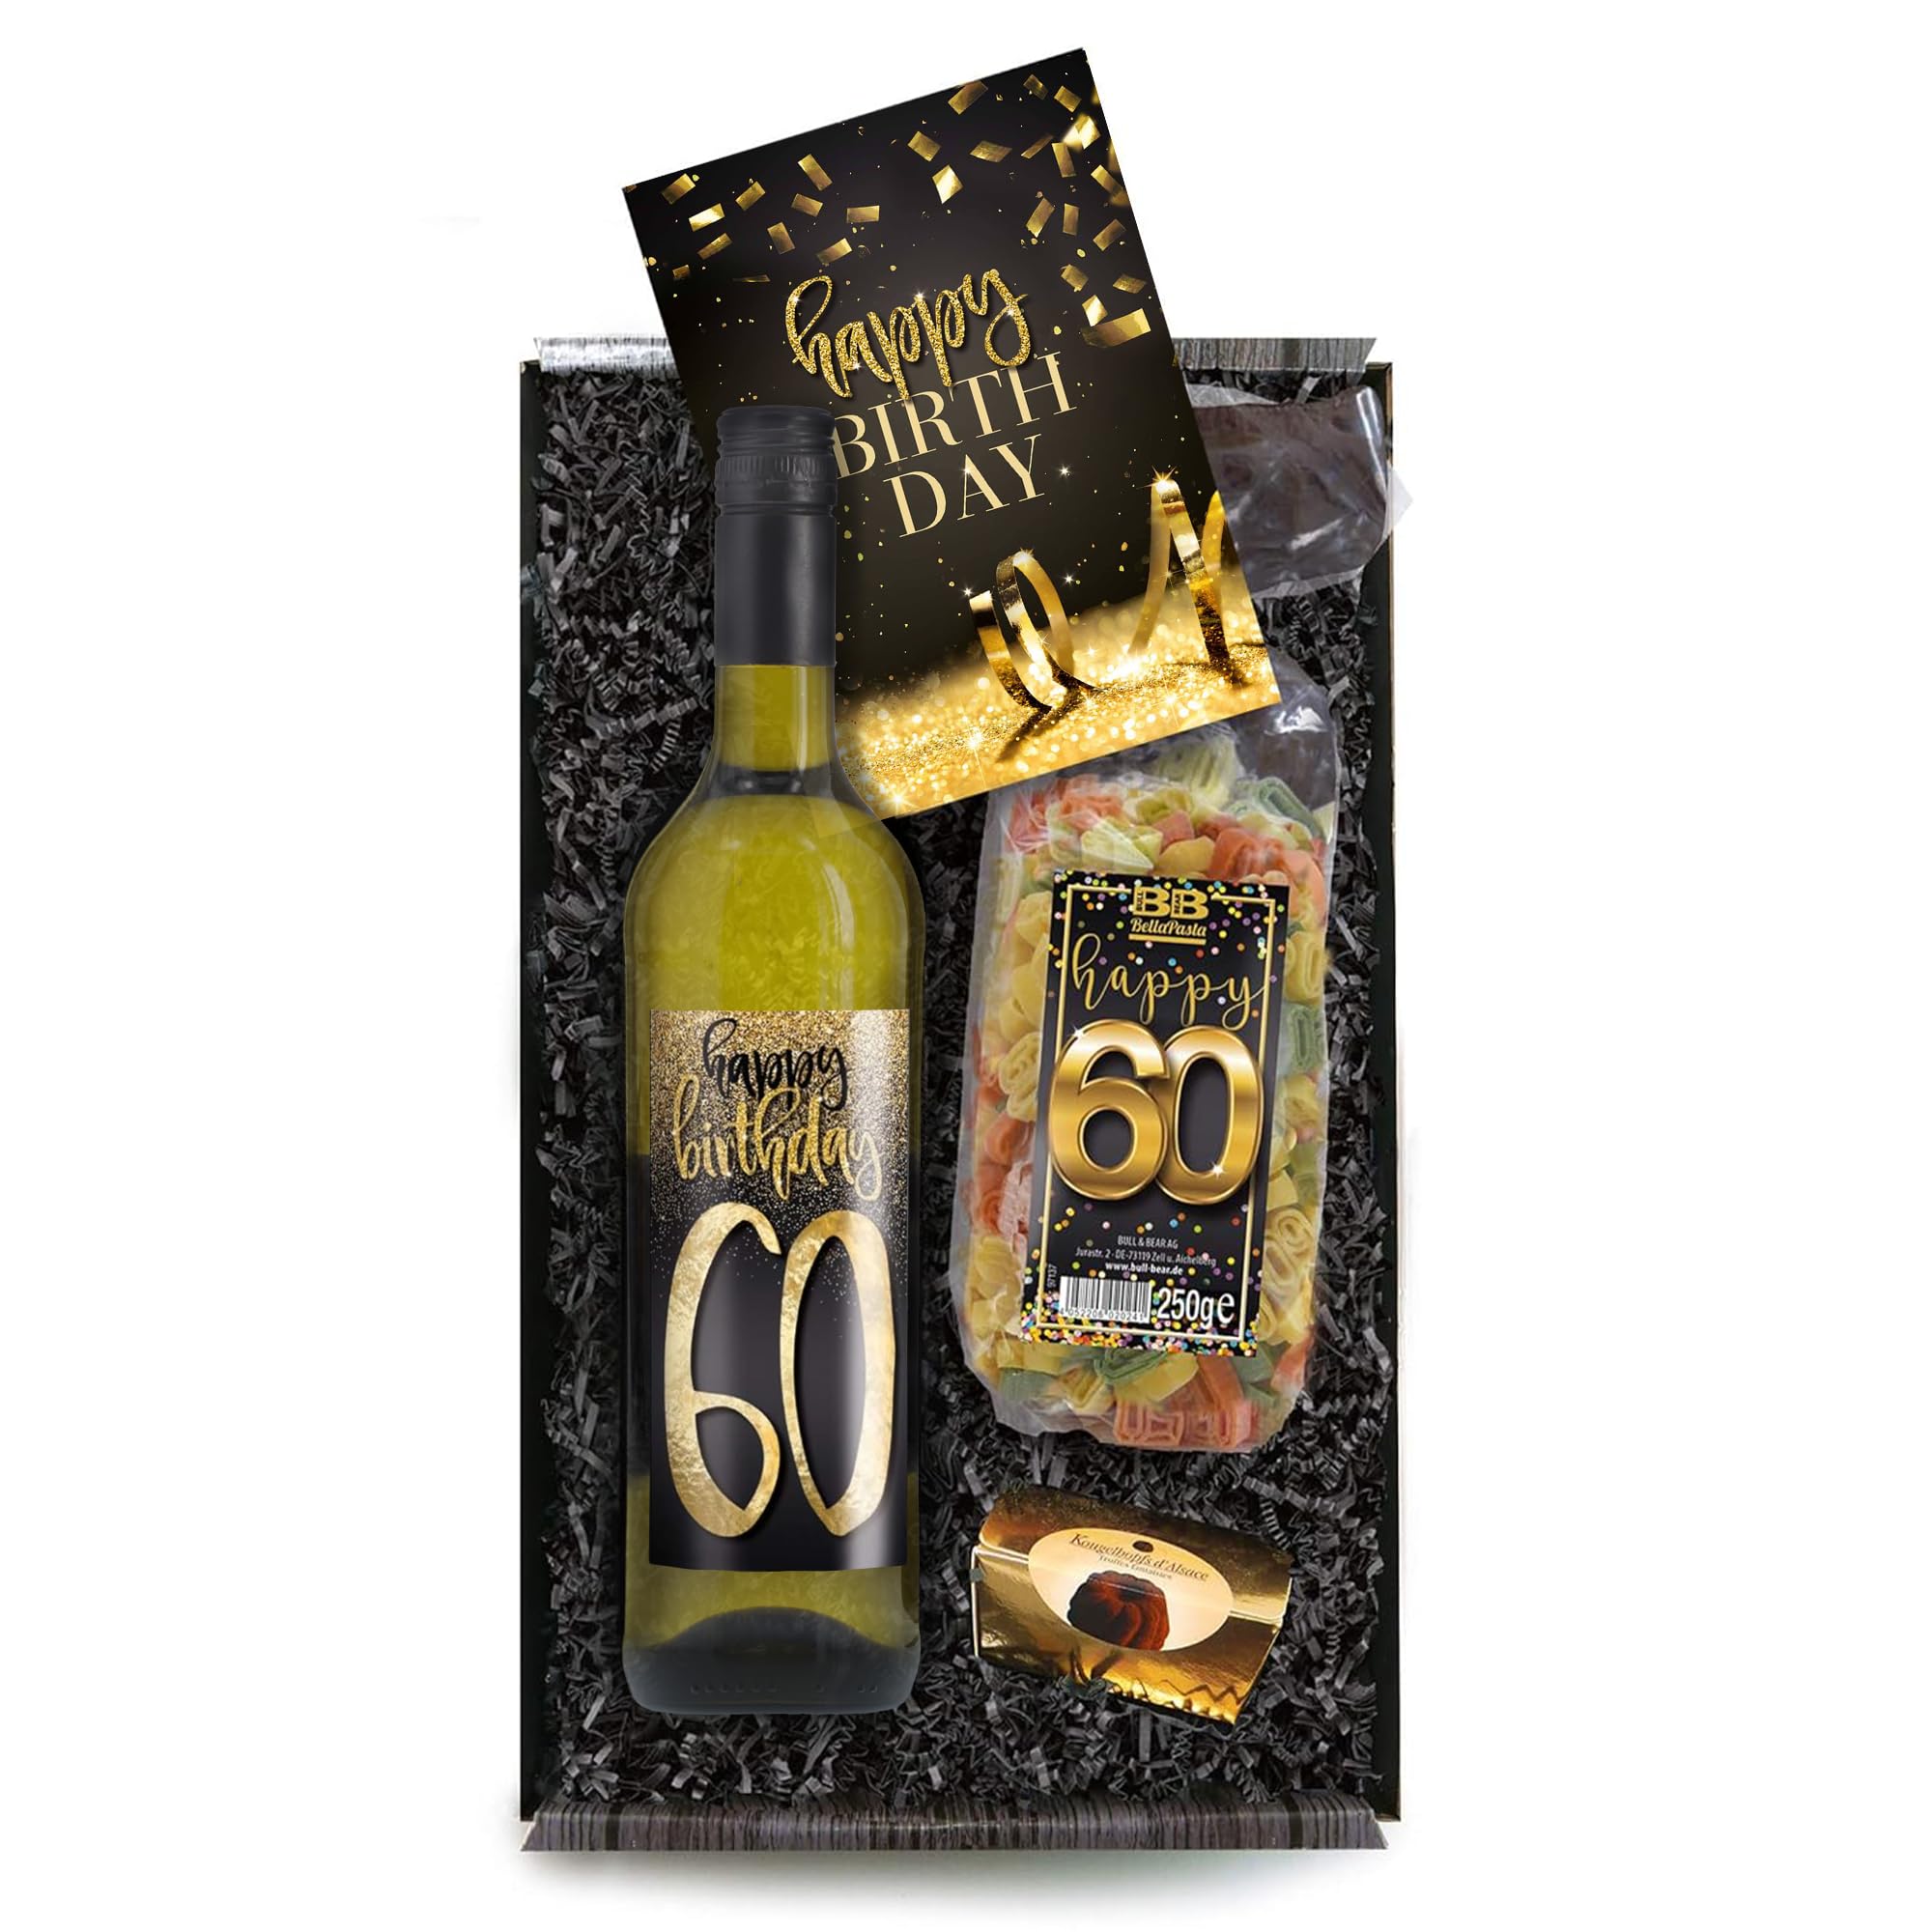 Bull & Bear Geschenkbox "Happy Birthday 60", Set mit Weisswein, Nudeln und Geburtstagskarte, Geschenk zum 60. Geburtstag